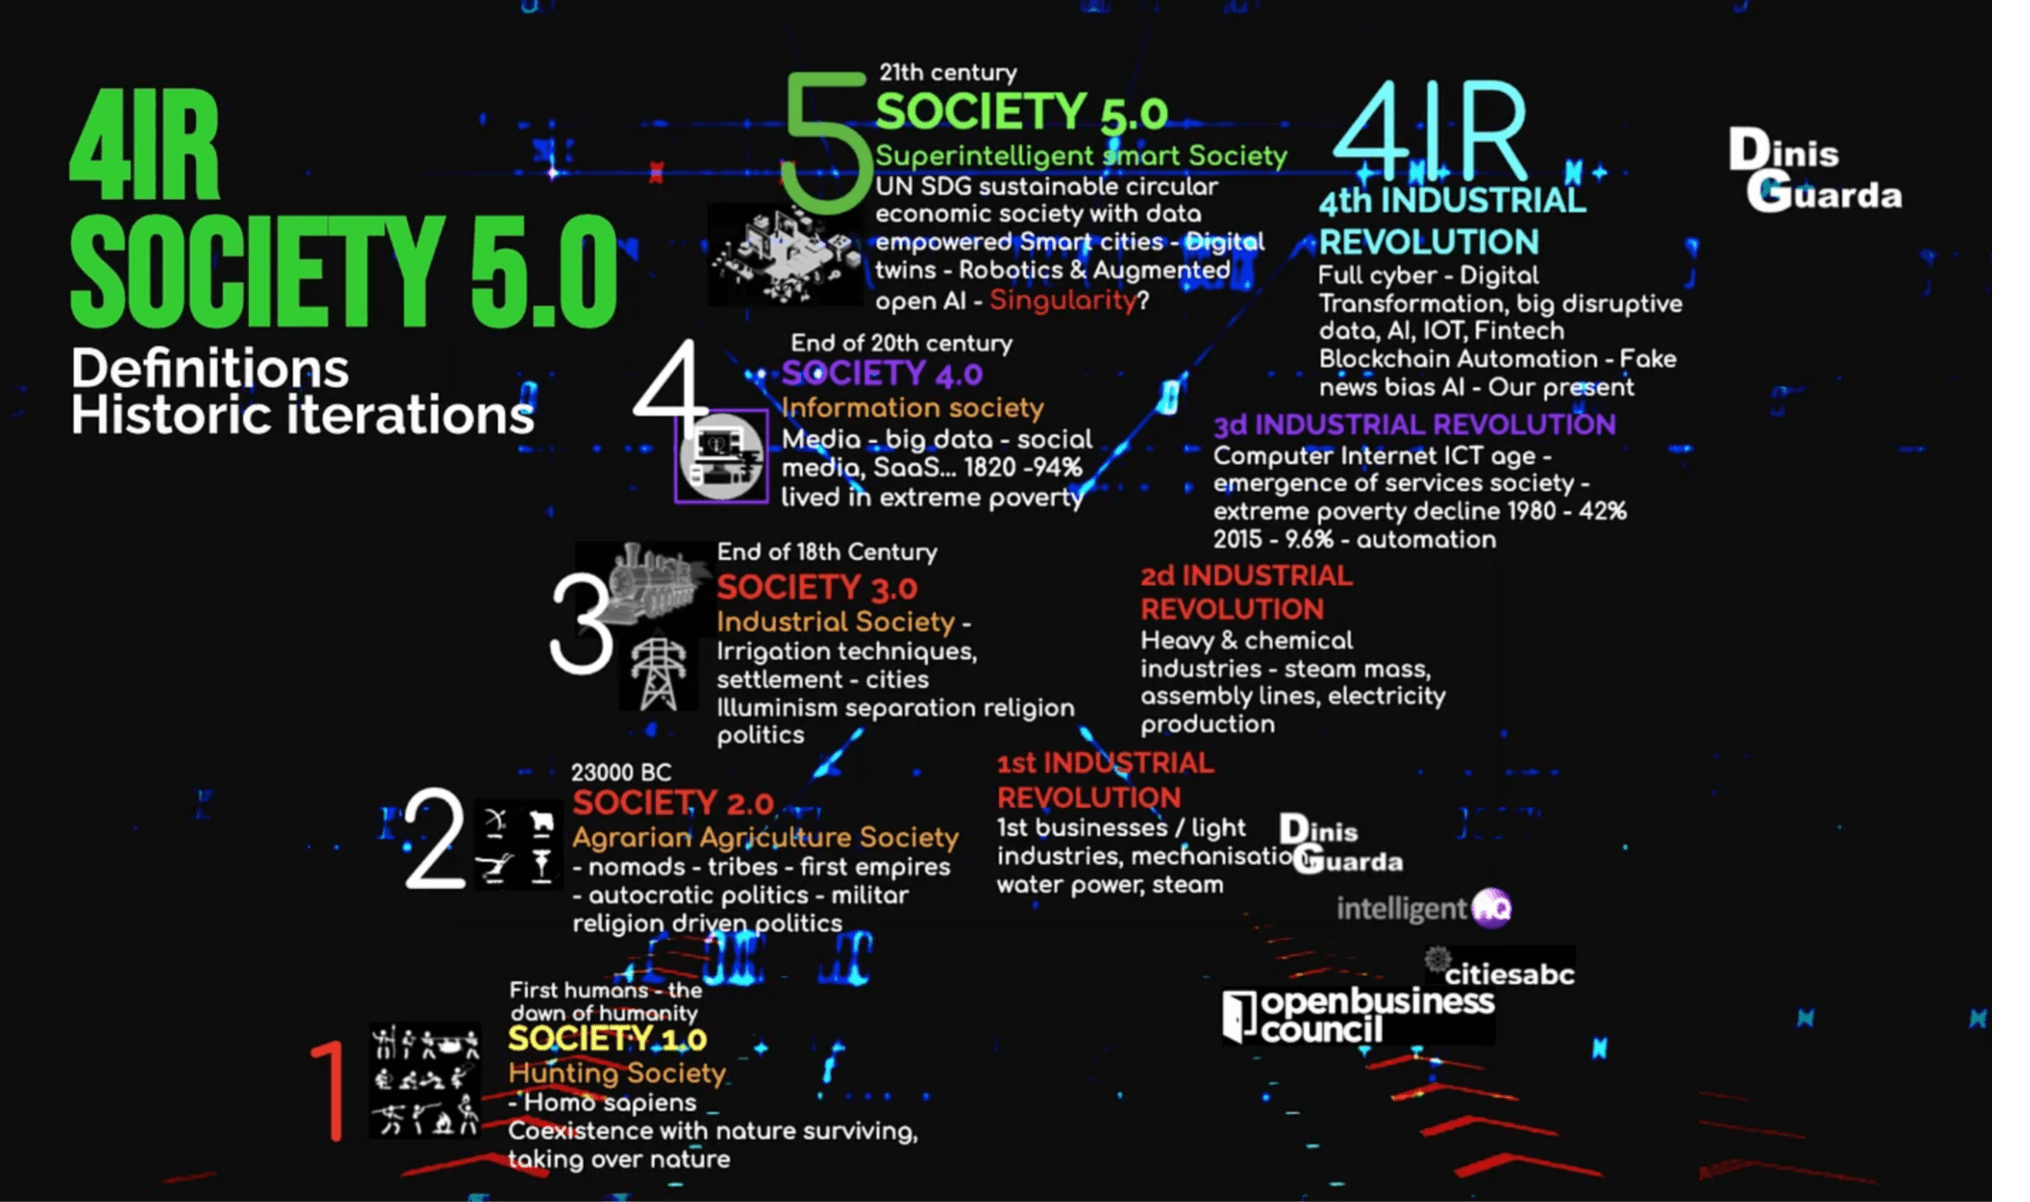 4IR society 5.0.png